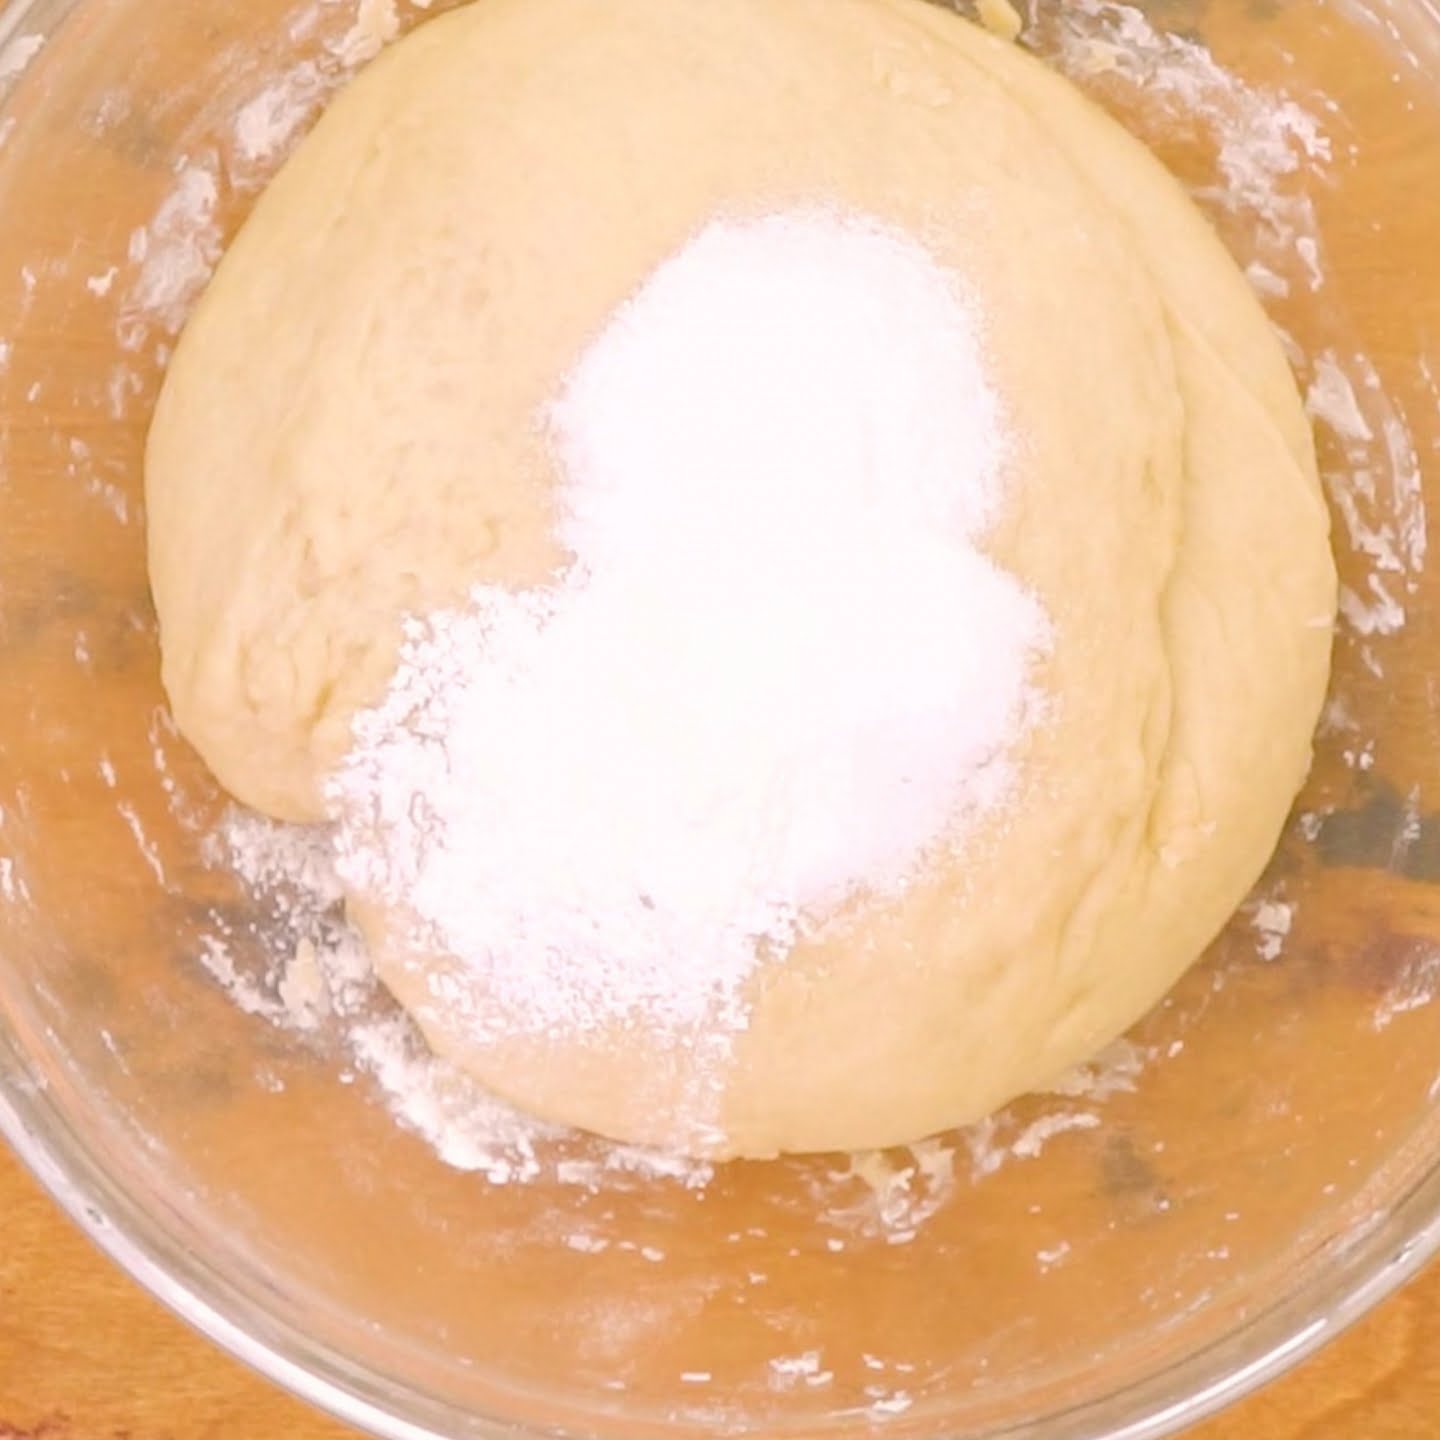 risen dough with baking powder, baking soda, salt